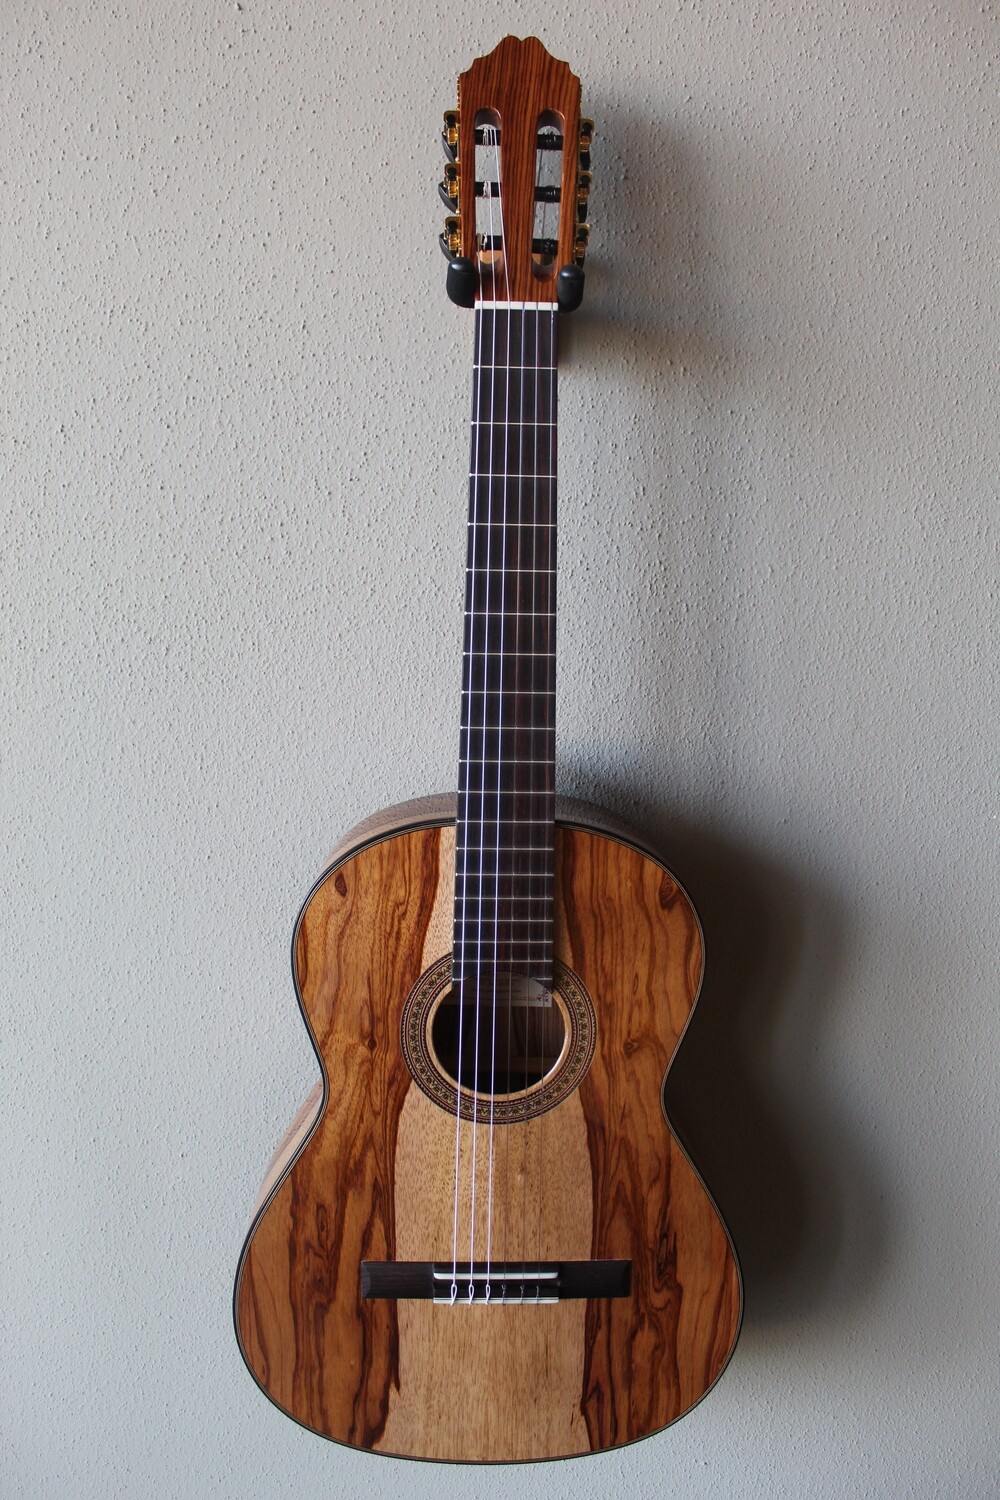 Francisco Navarro Jr. Premium Wood Tesoro Model Classical Guitar - 630 Scale